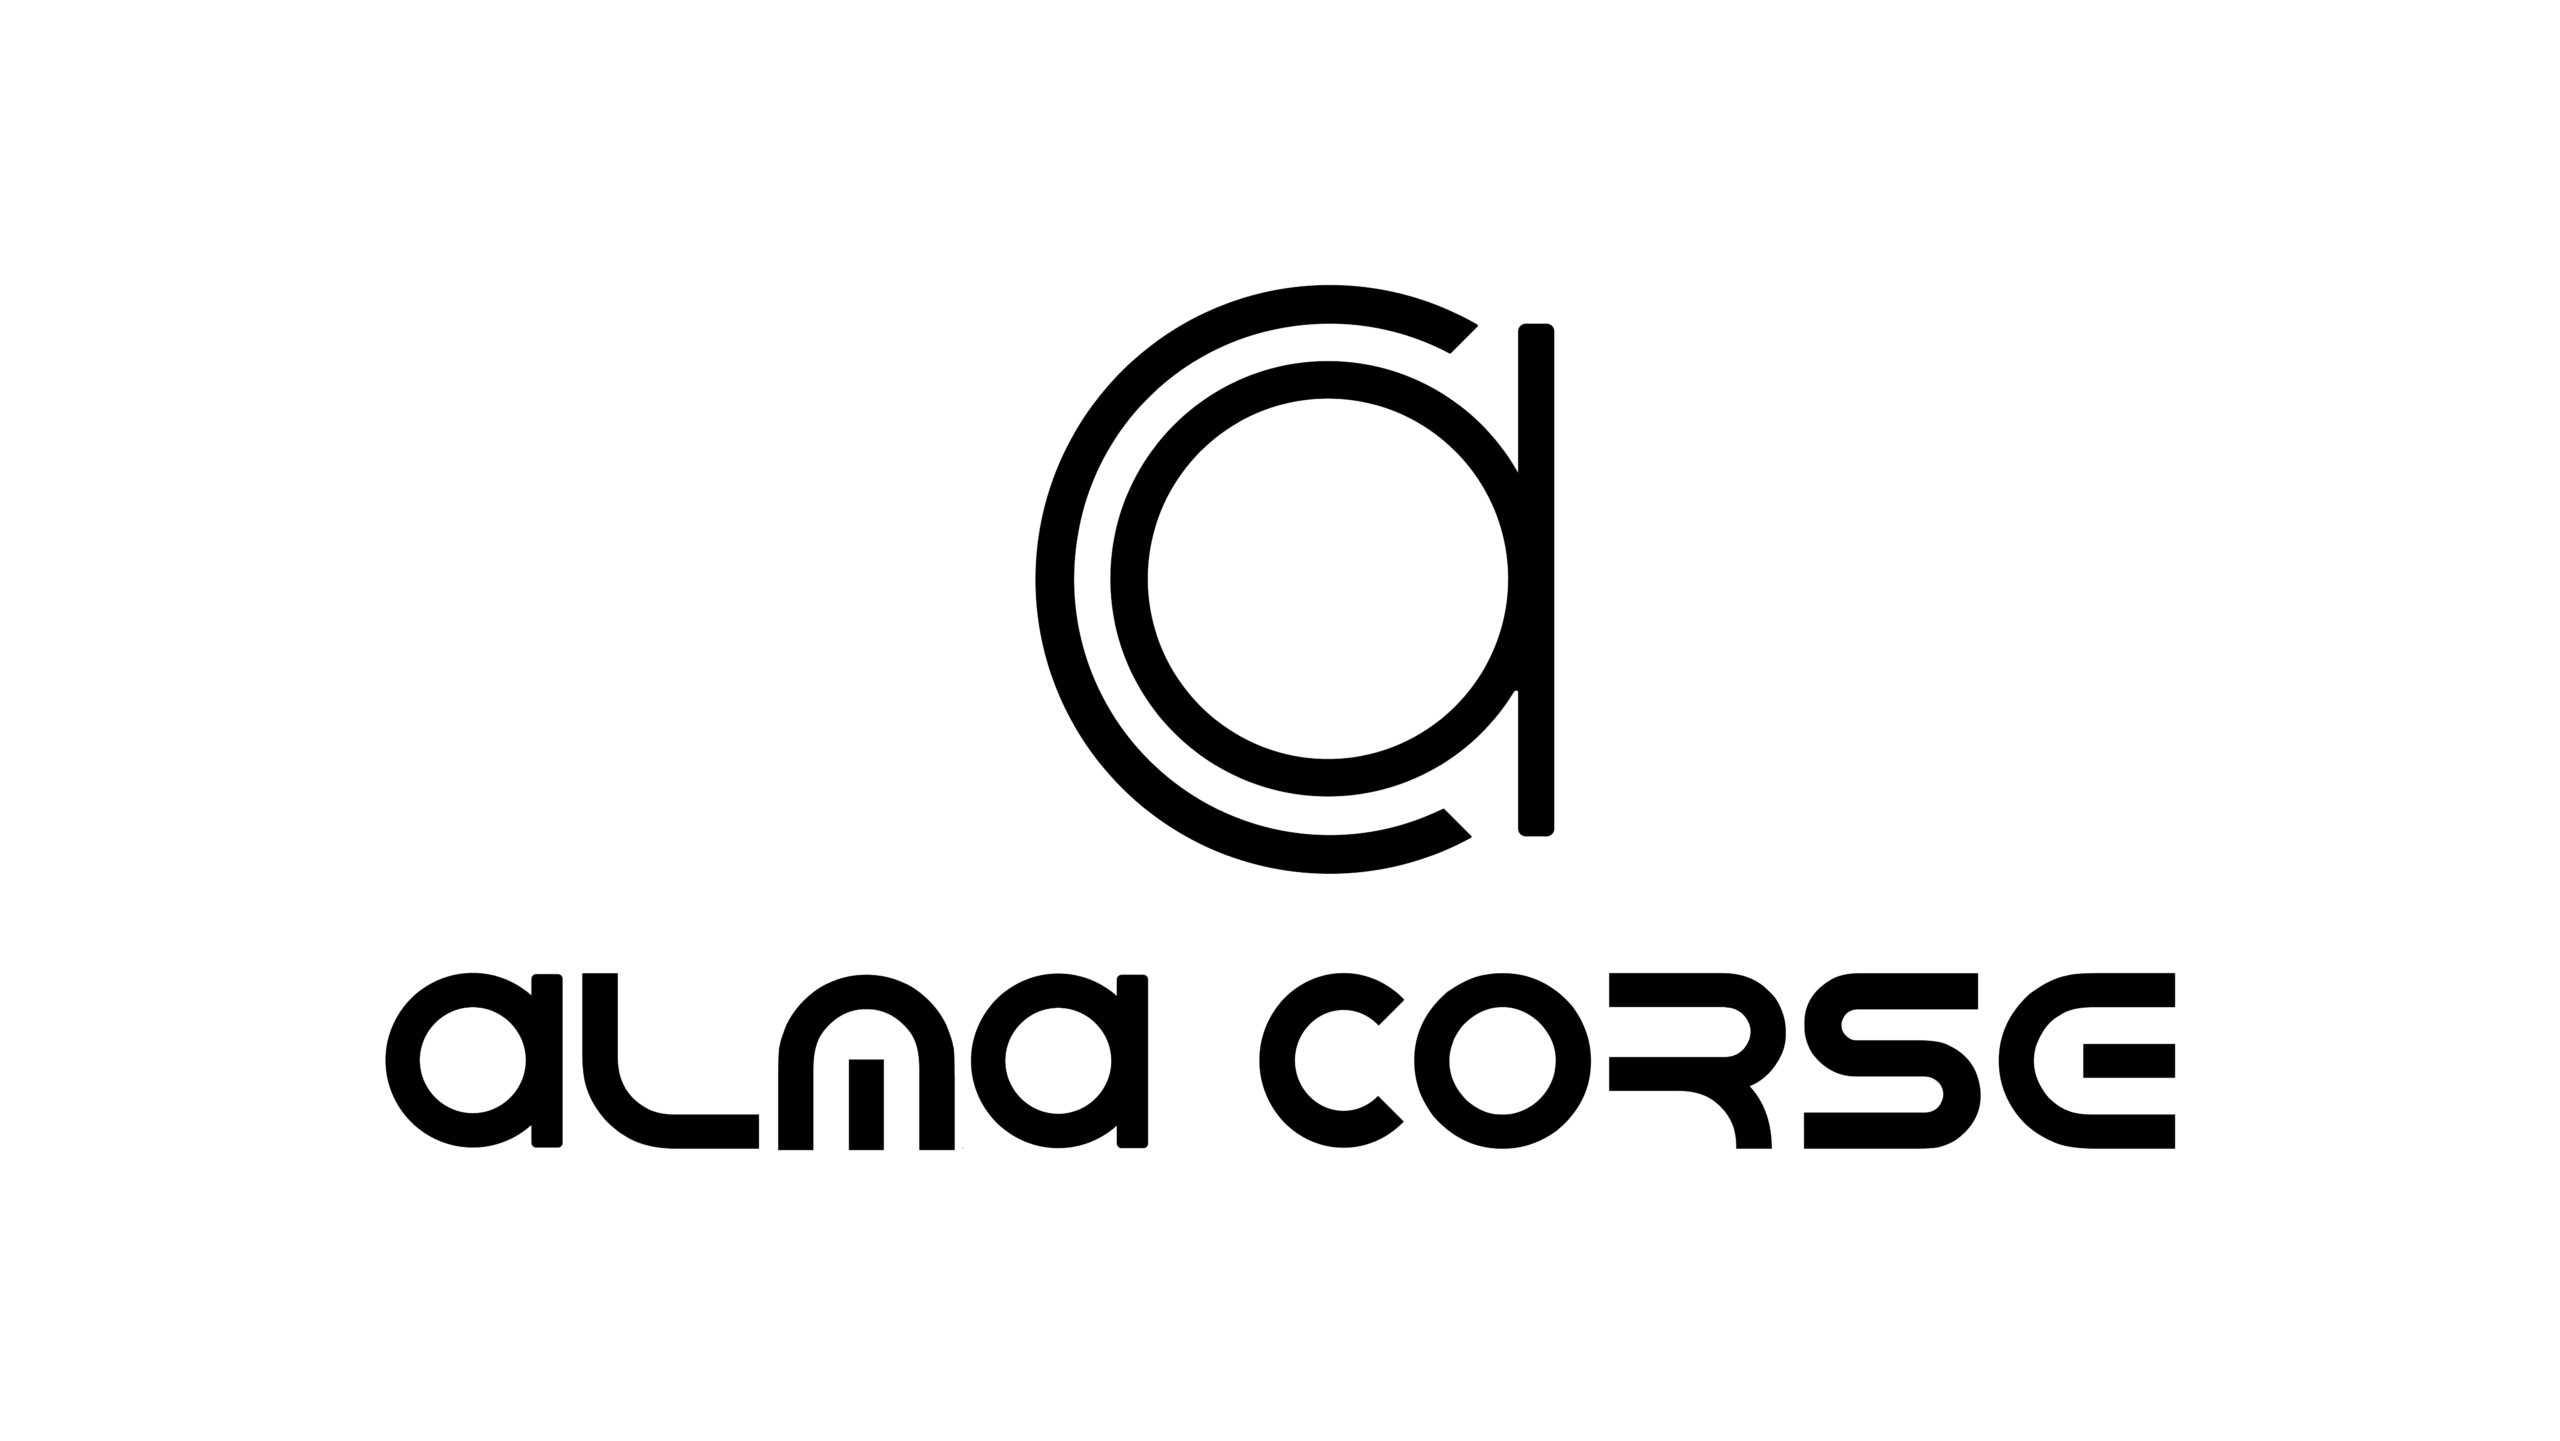 Alma Corse